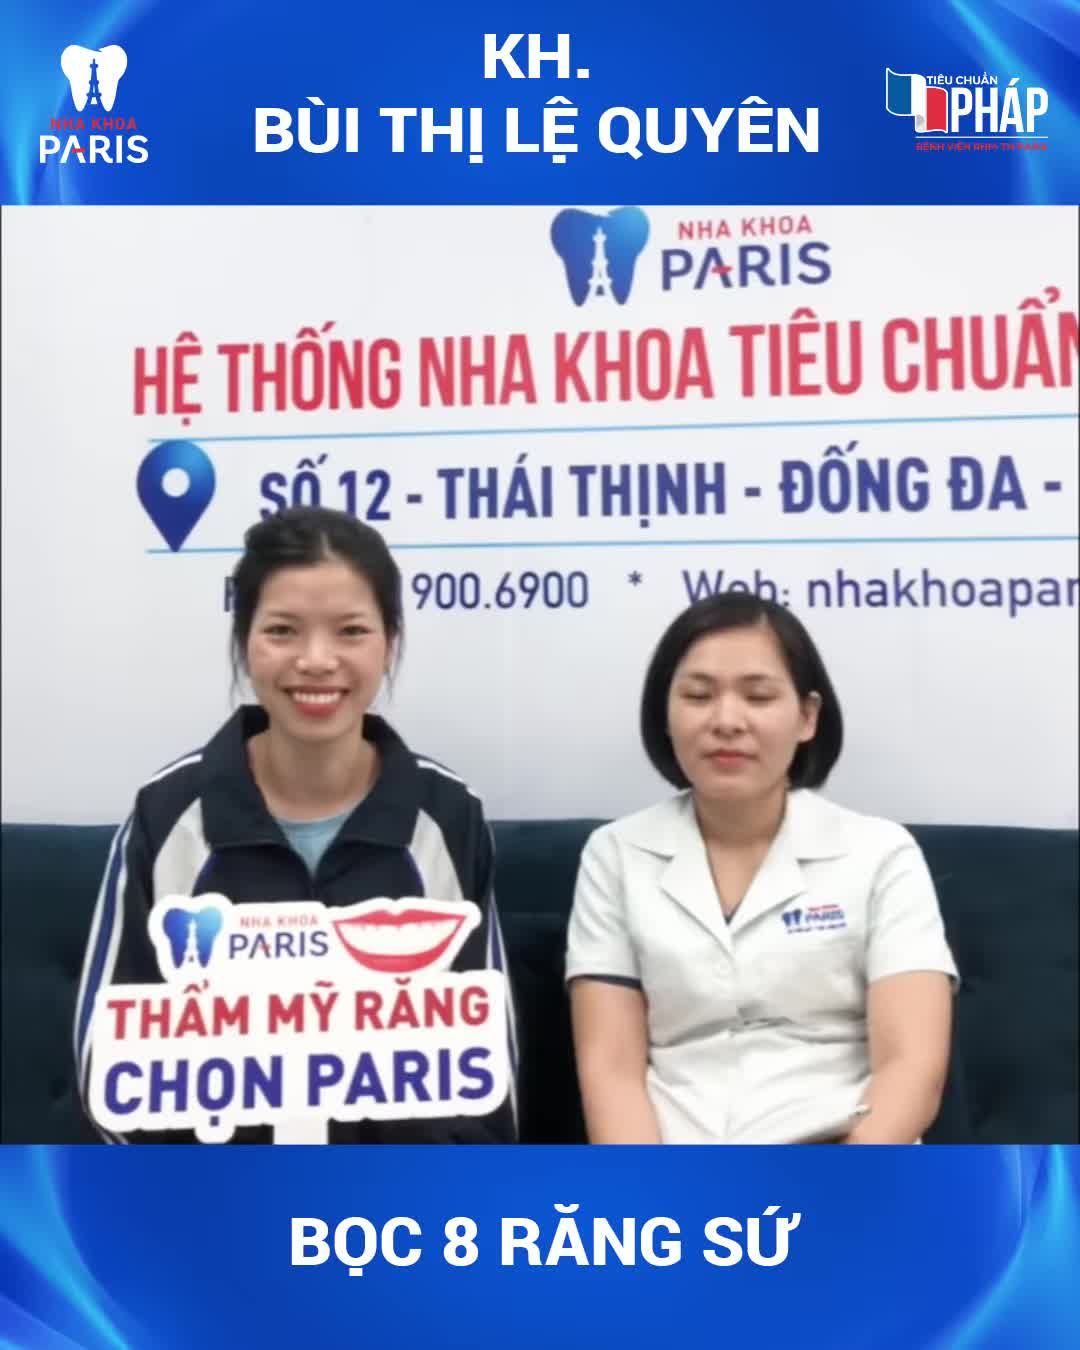 "Bọc răng sứ tại NK Paris - Lựa chọn đúng đắn"